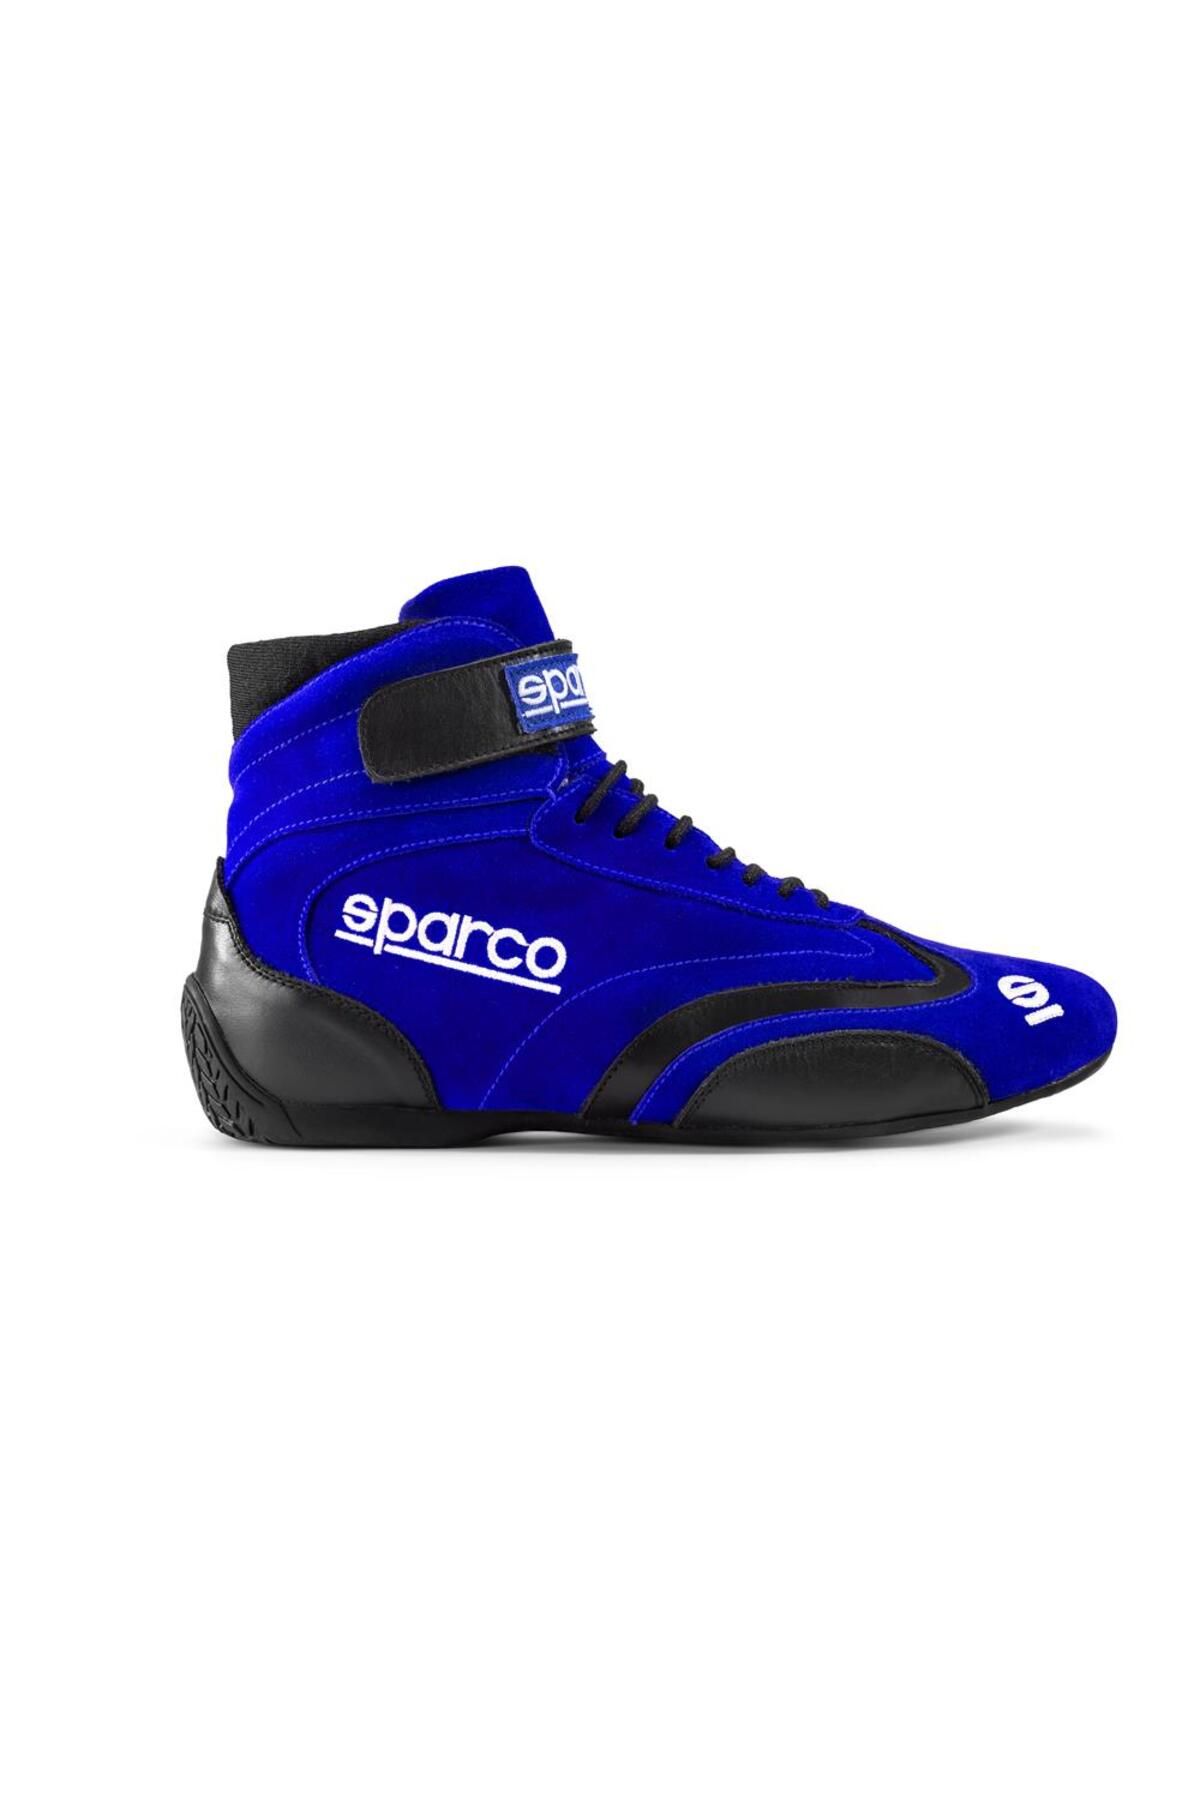 Sparco Top Yarış Ayakkabısı Fia Onaylı Mavi 43 Numara